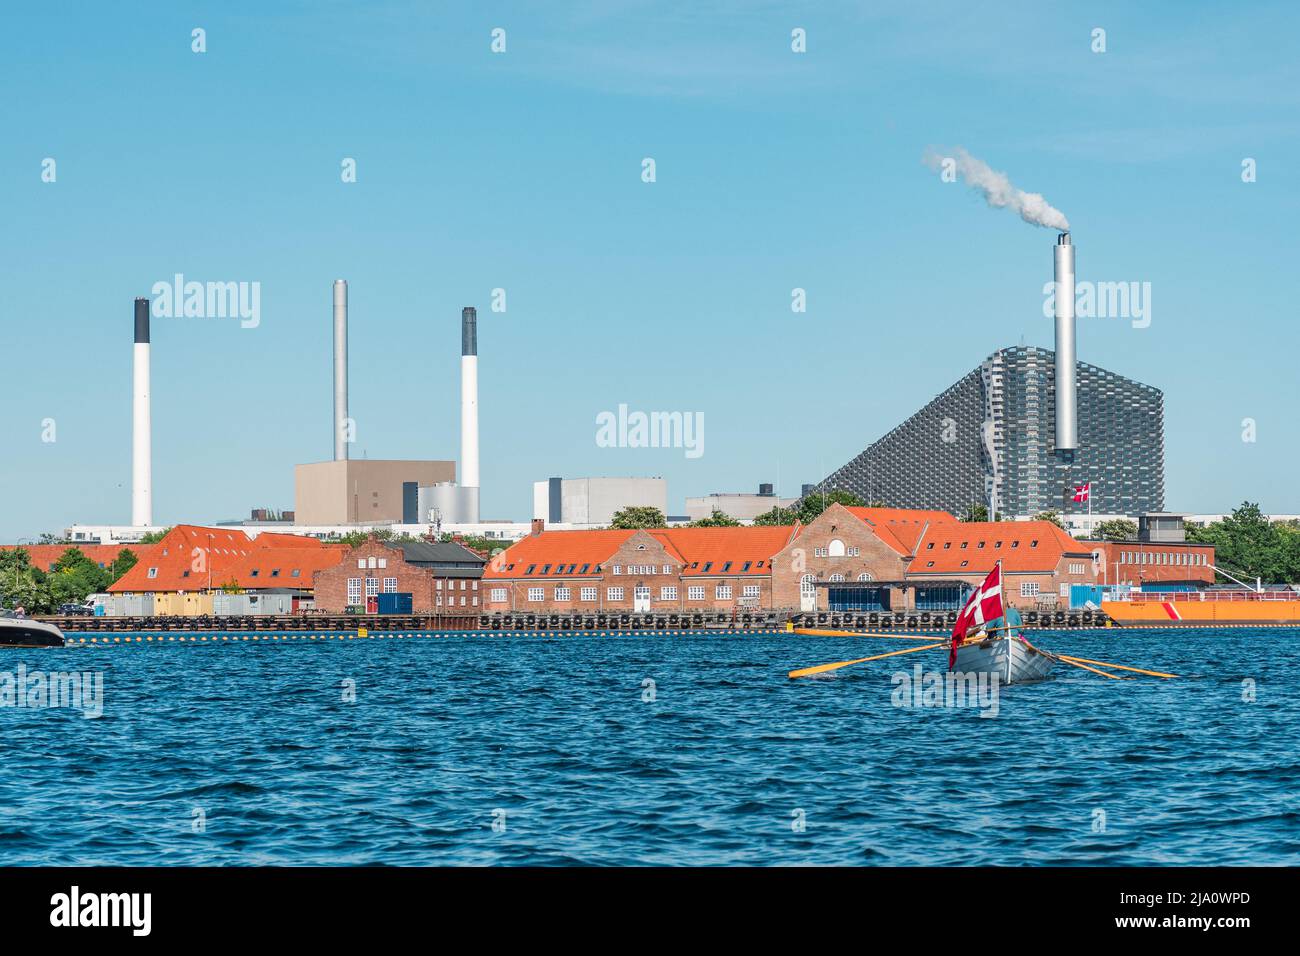 Amager Bakke, Slope o Copenhill, impianto di incenerimento, impianto di produzione di calore ed energia e impianto ricreativo a Copenaghen, Danimarca, con nave Foto Stock